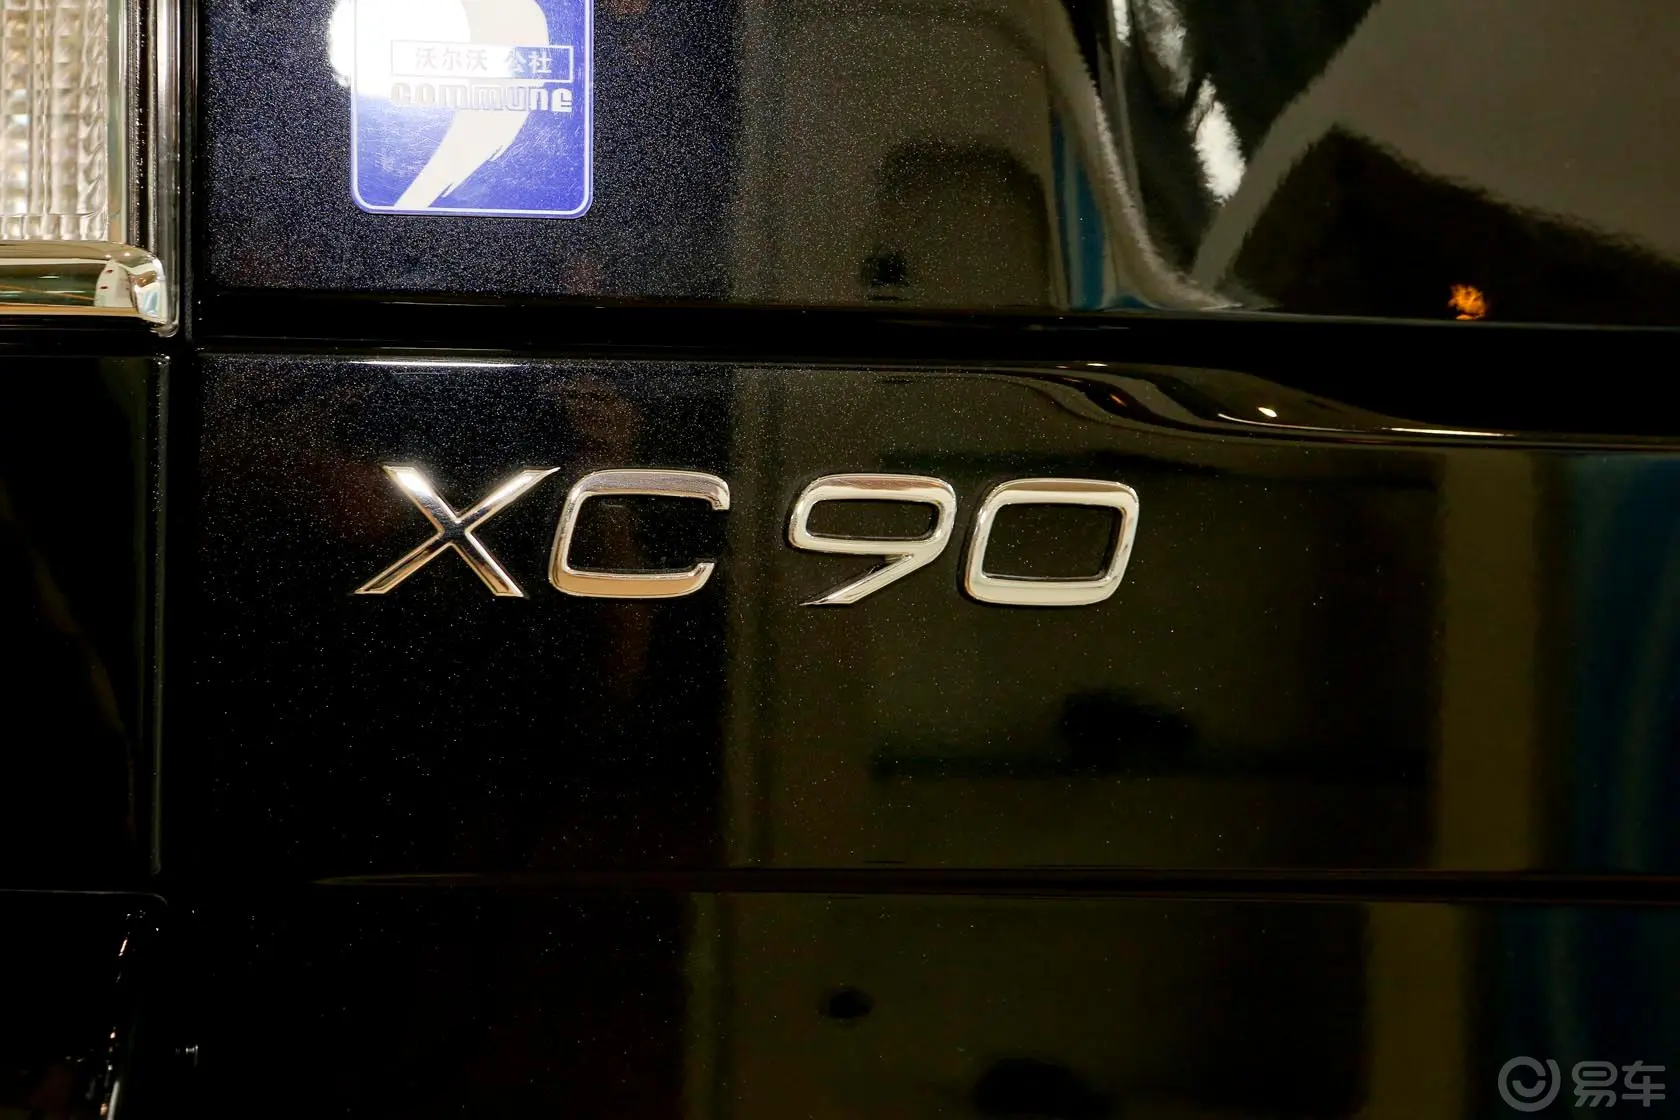 沃尔沃XC902.5T T5 豪华版尾标